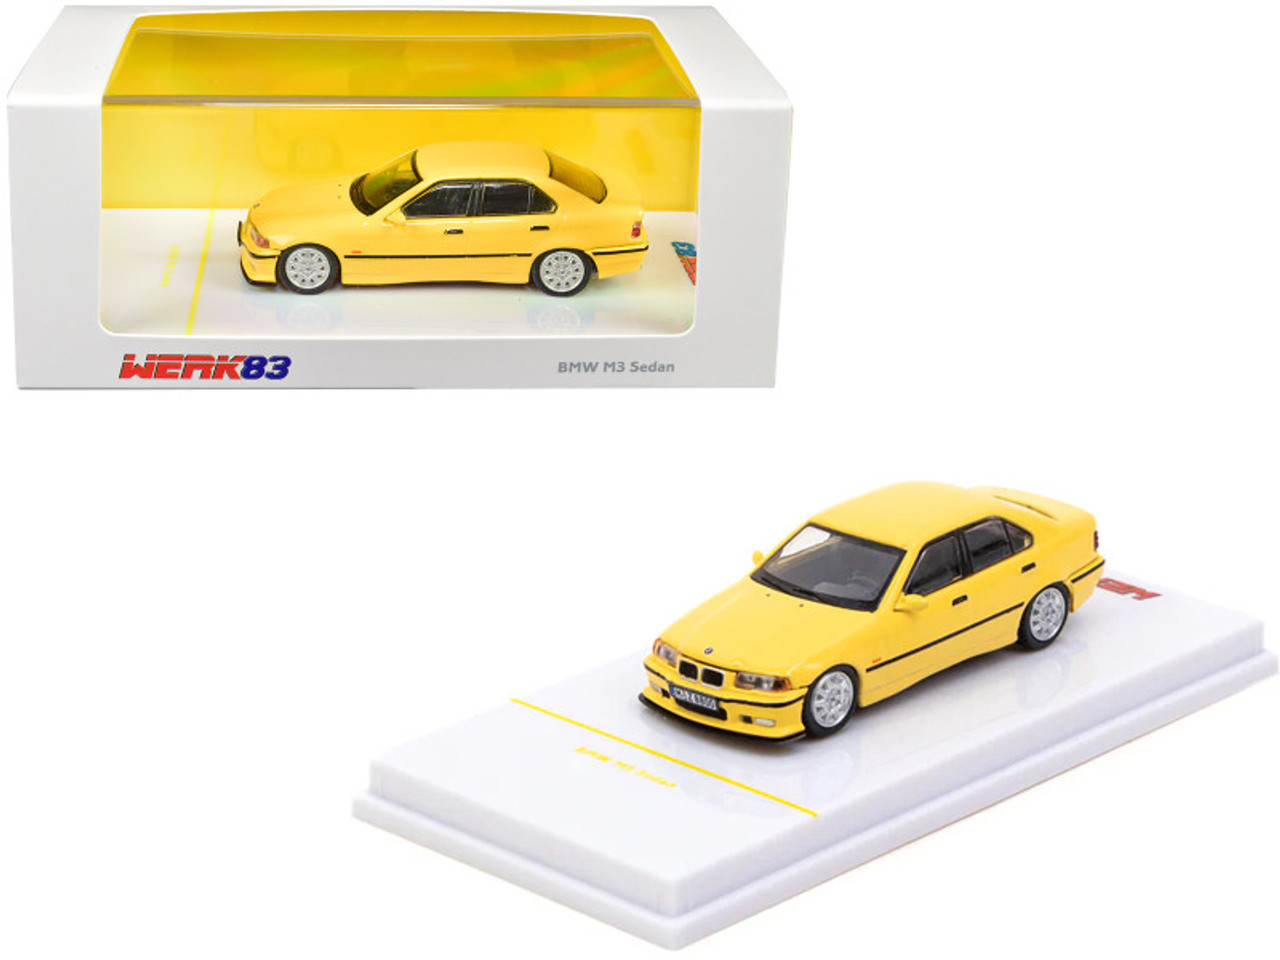 1/64 Werk83  BMW M3 Sedan Yellow 